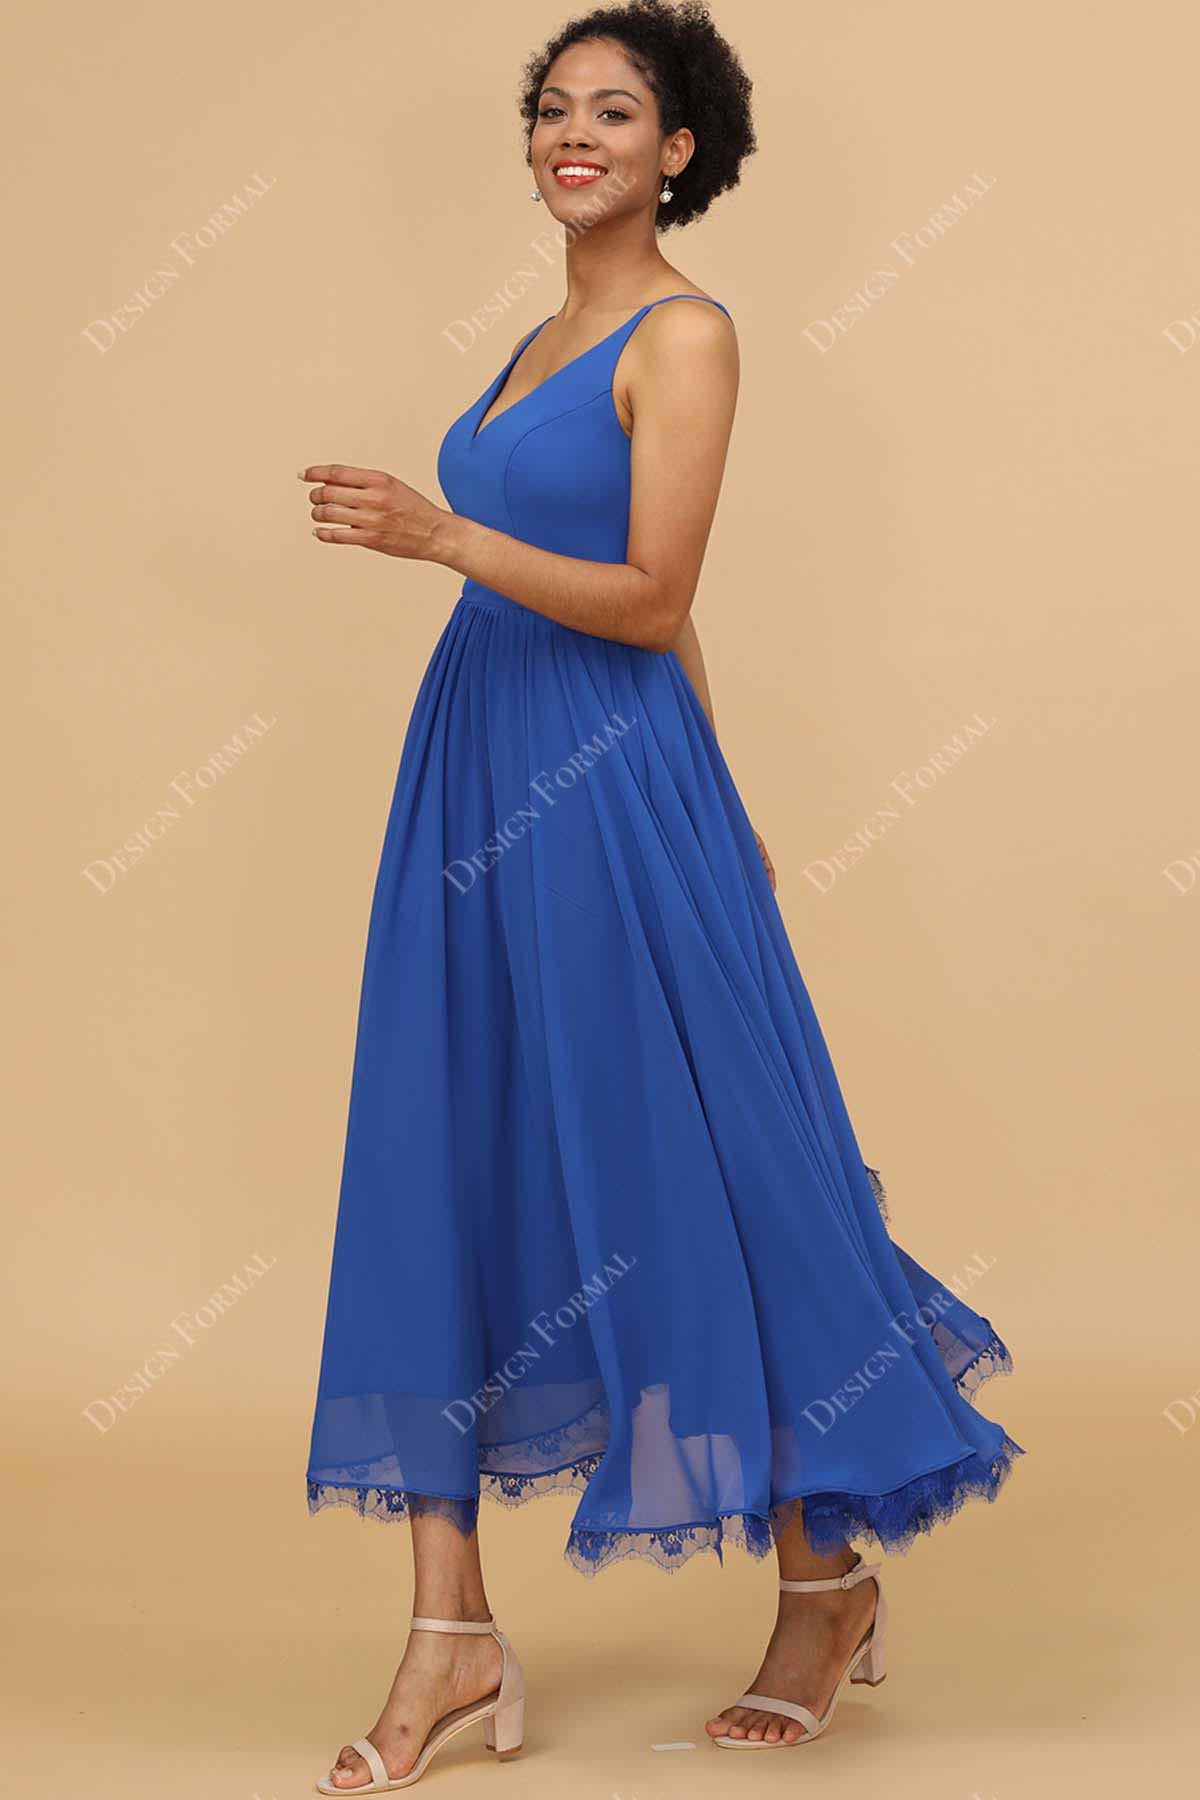 royal blue lace chiffon flowy wedding party dress